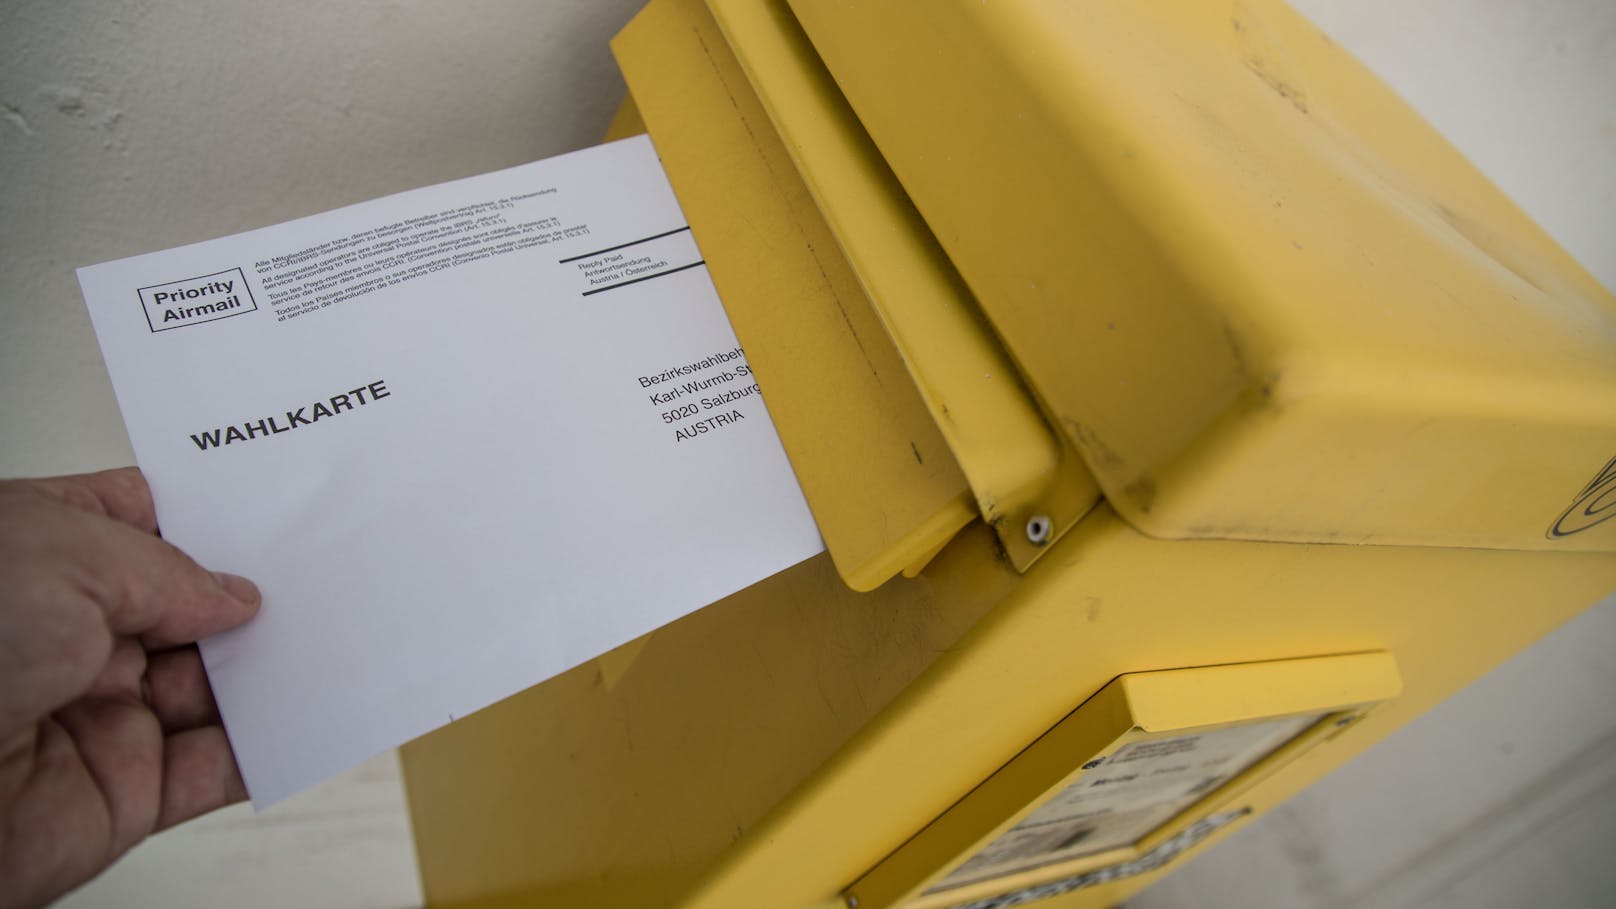 Salzburg-Stichwahl – Wahlkarten ab sofort erhältlich